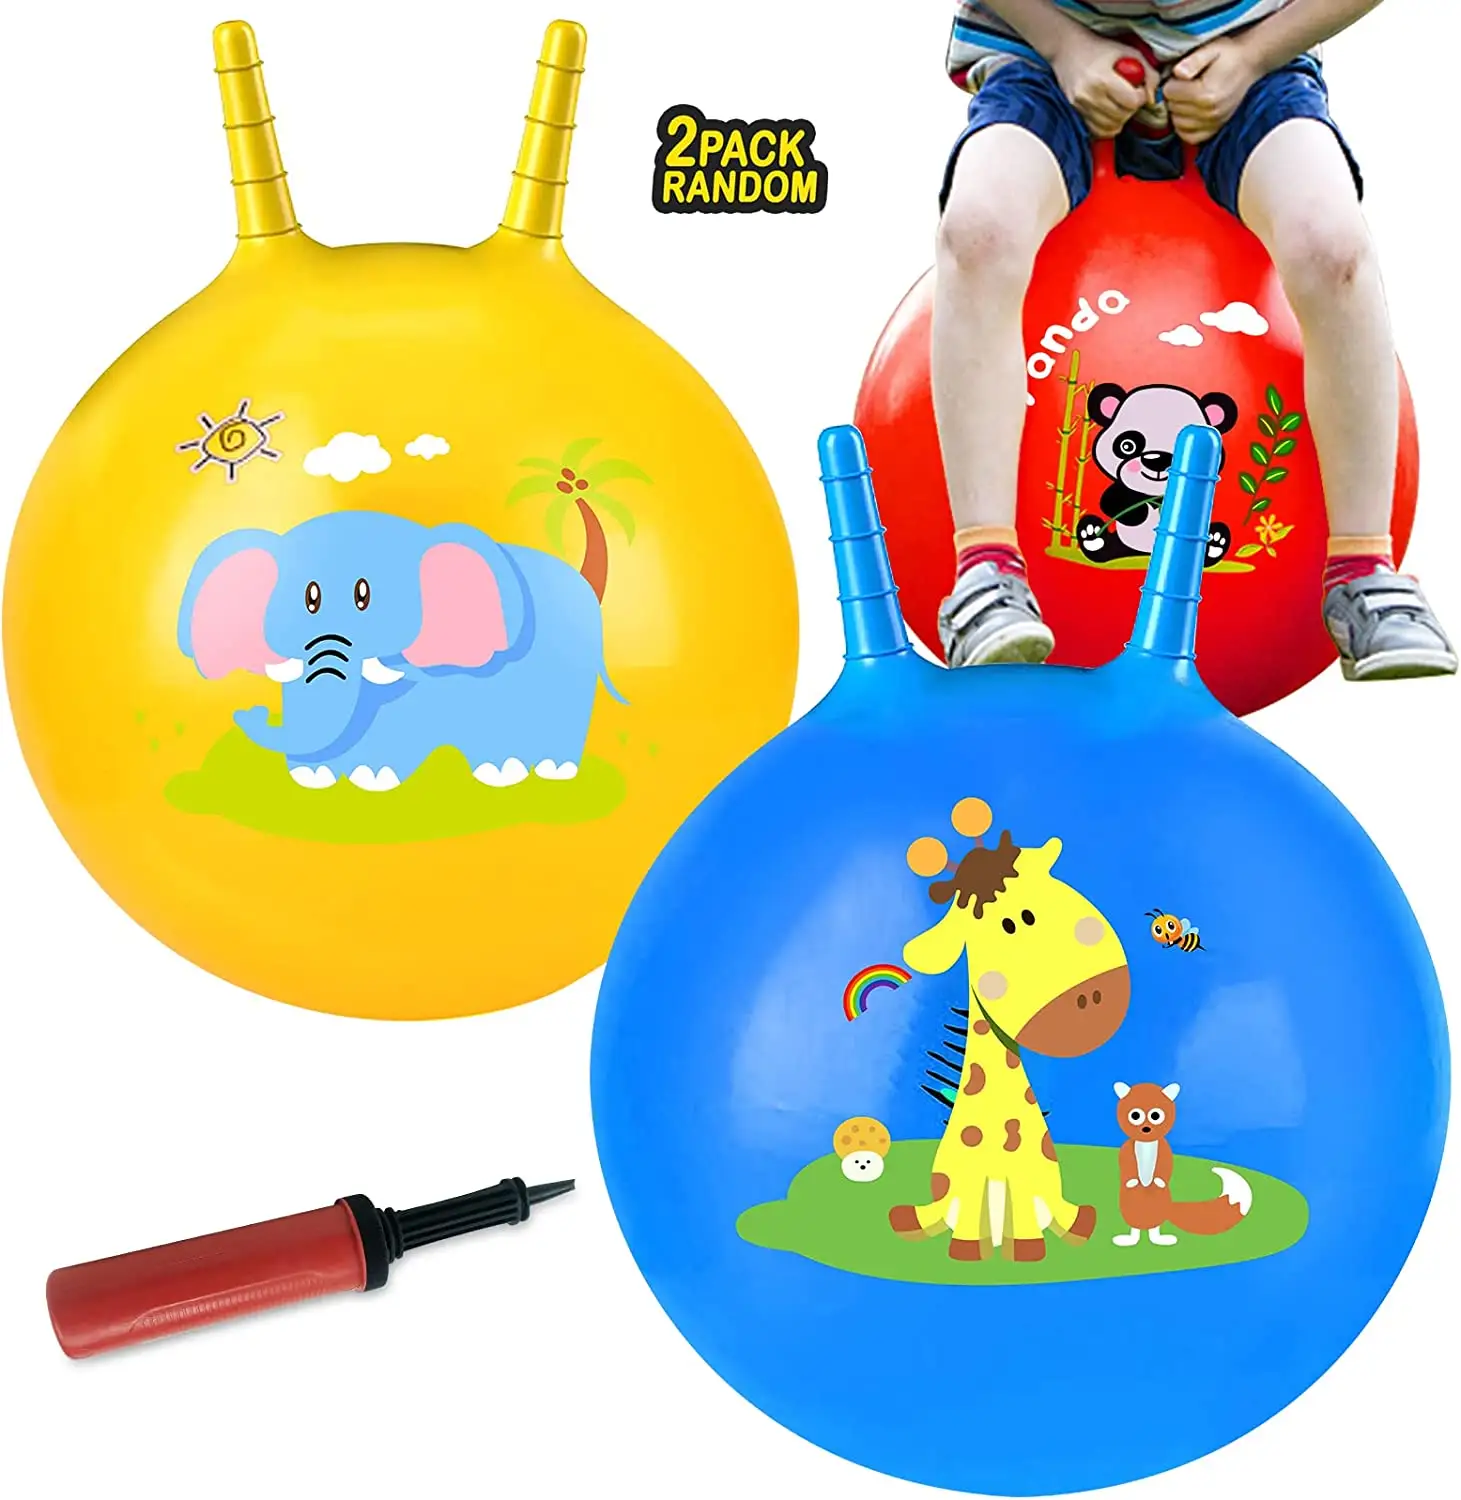 2パック-ハンドル付き18 "バウンスボール、バランスジャンプゲーム用のキッズビッグバウンシージャンプボール、幼児のおもちゃ